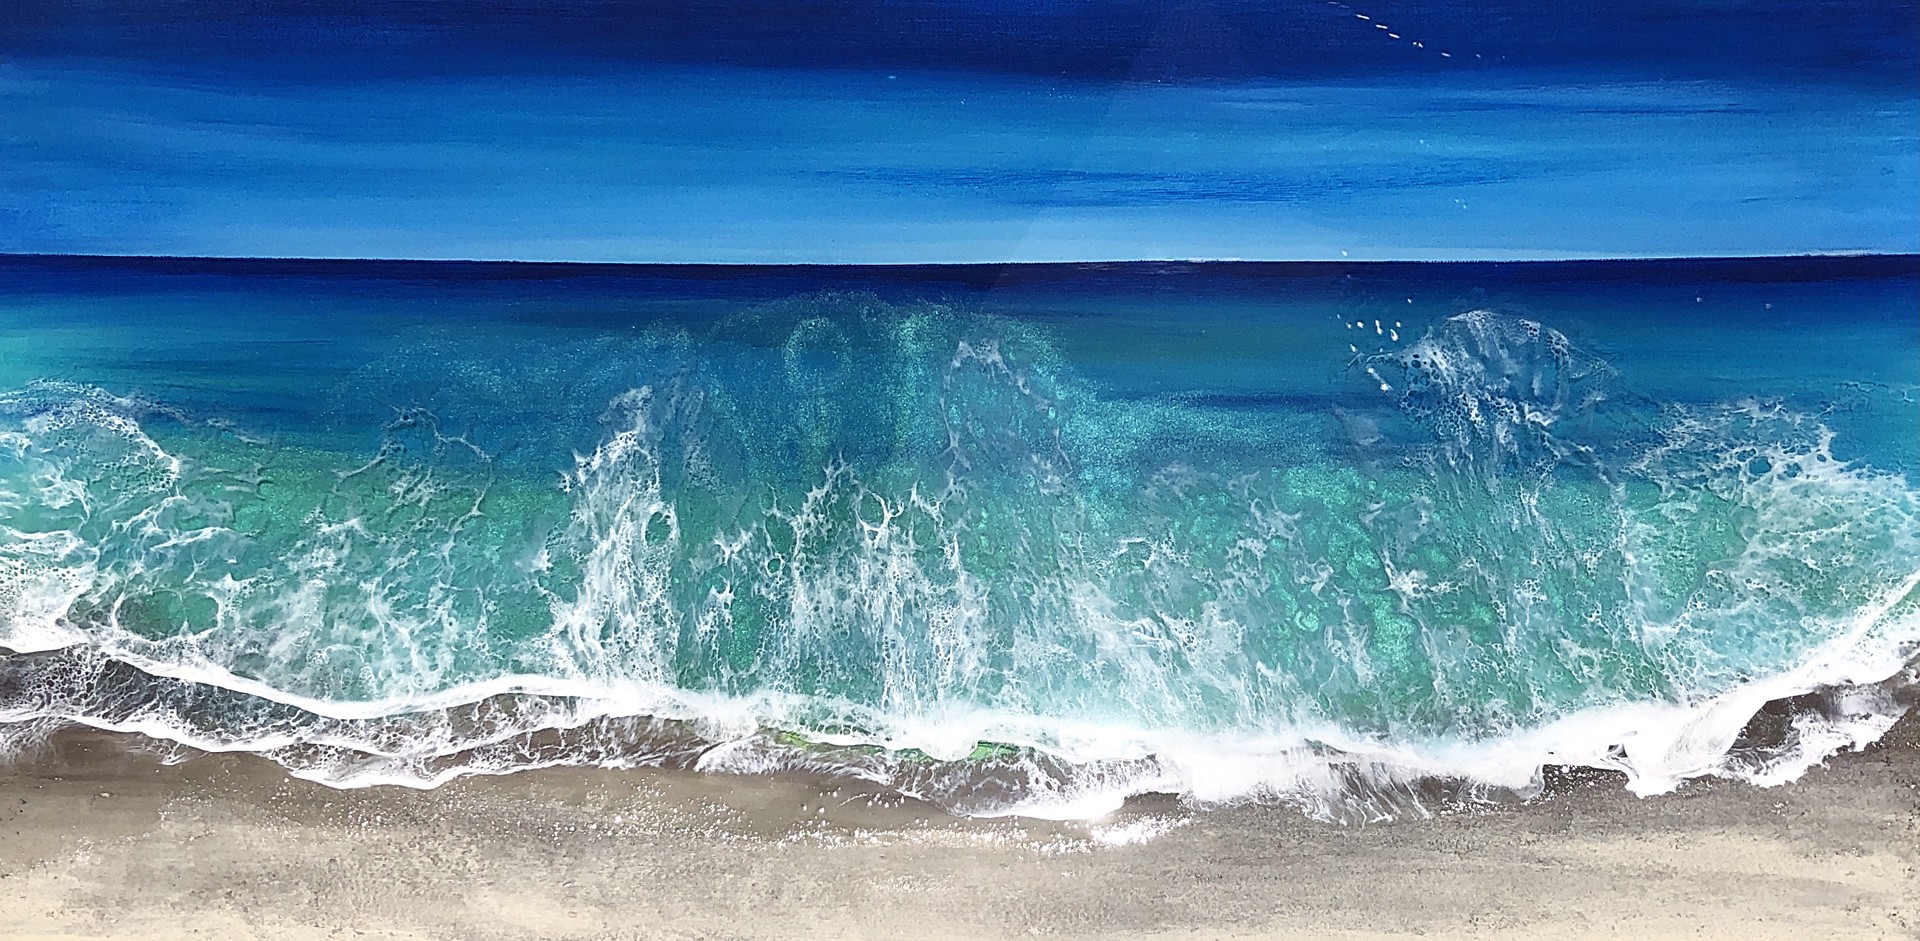 Ocean Waves #6 by Ana Hefco